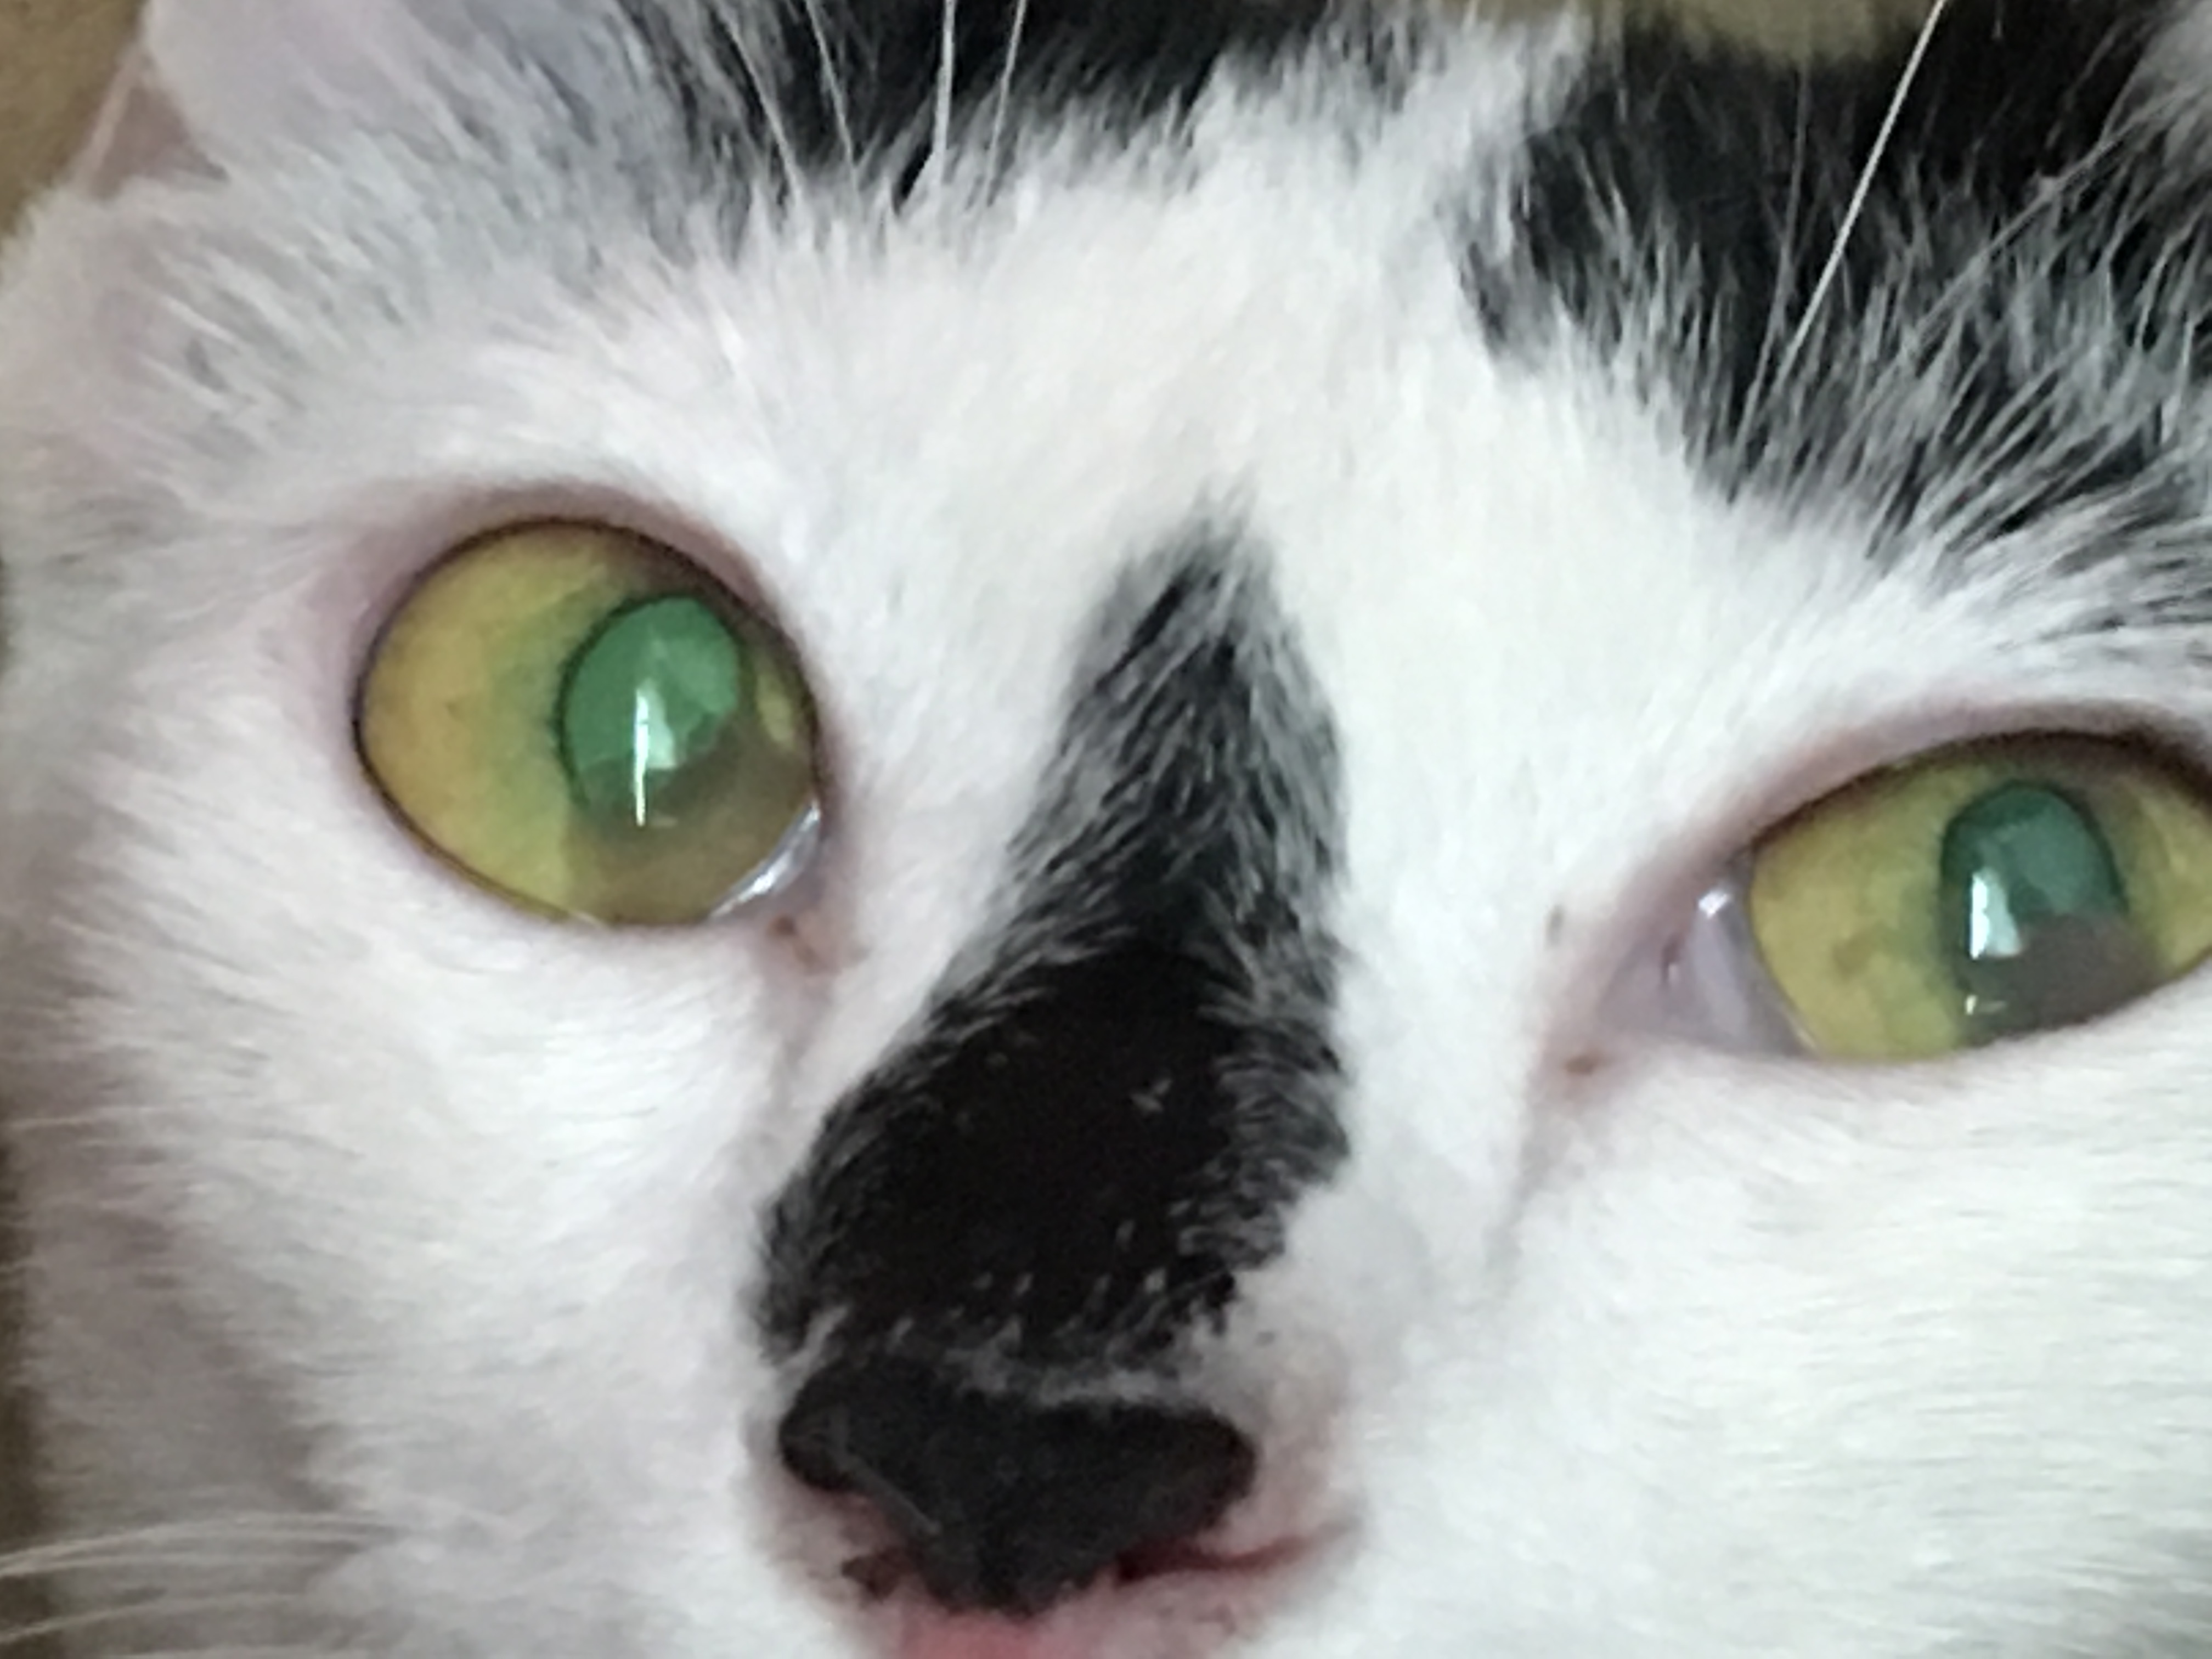 อยู่ๆตาแมวก็มีลักษณะแบบนี้ค่ะ ไม่ทราบว่าเป็นโรคร้ายแรงอะไรมั้ยคะ